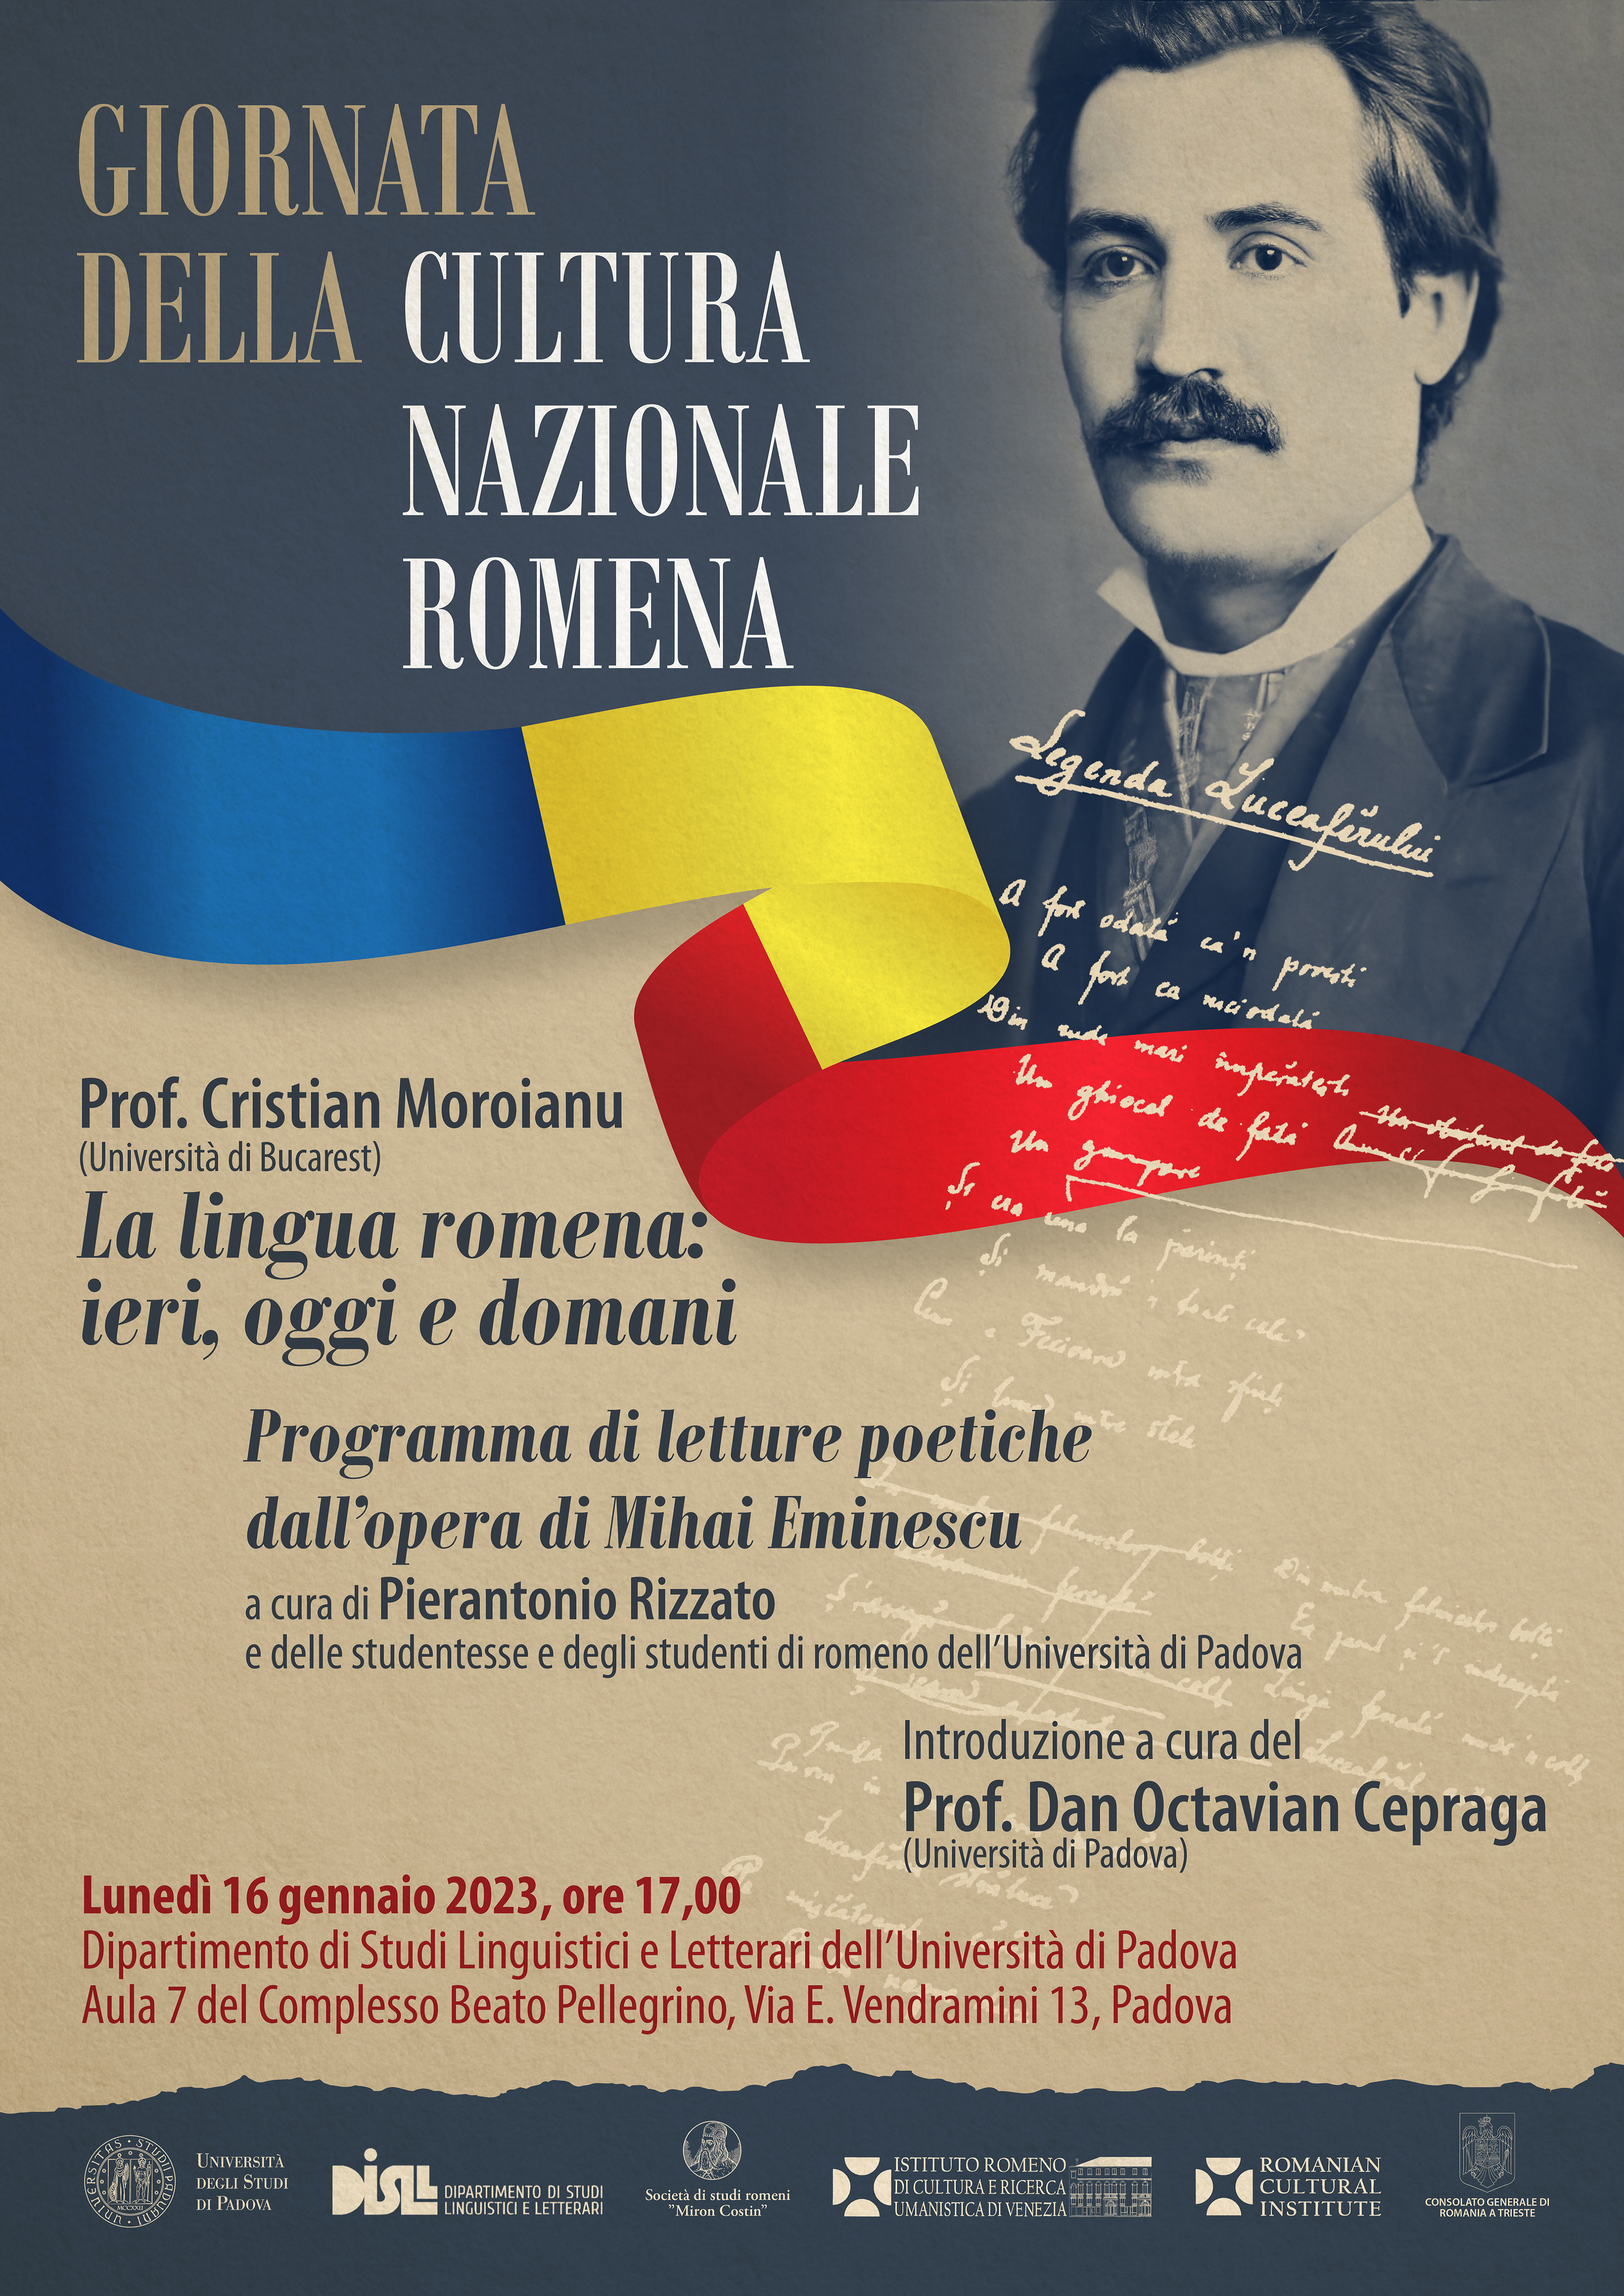 Attachment Locandina A3 Giornata della Cultura Nazionale Romena all’Università di Padova, lunedì 16 gennaio 2023.jpg